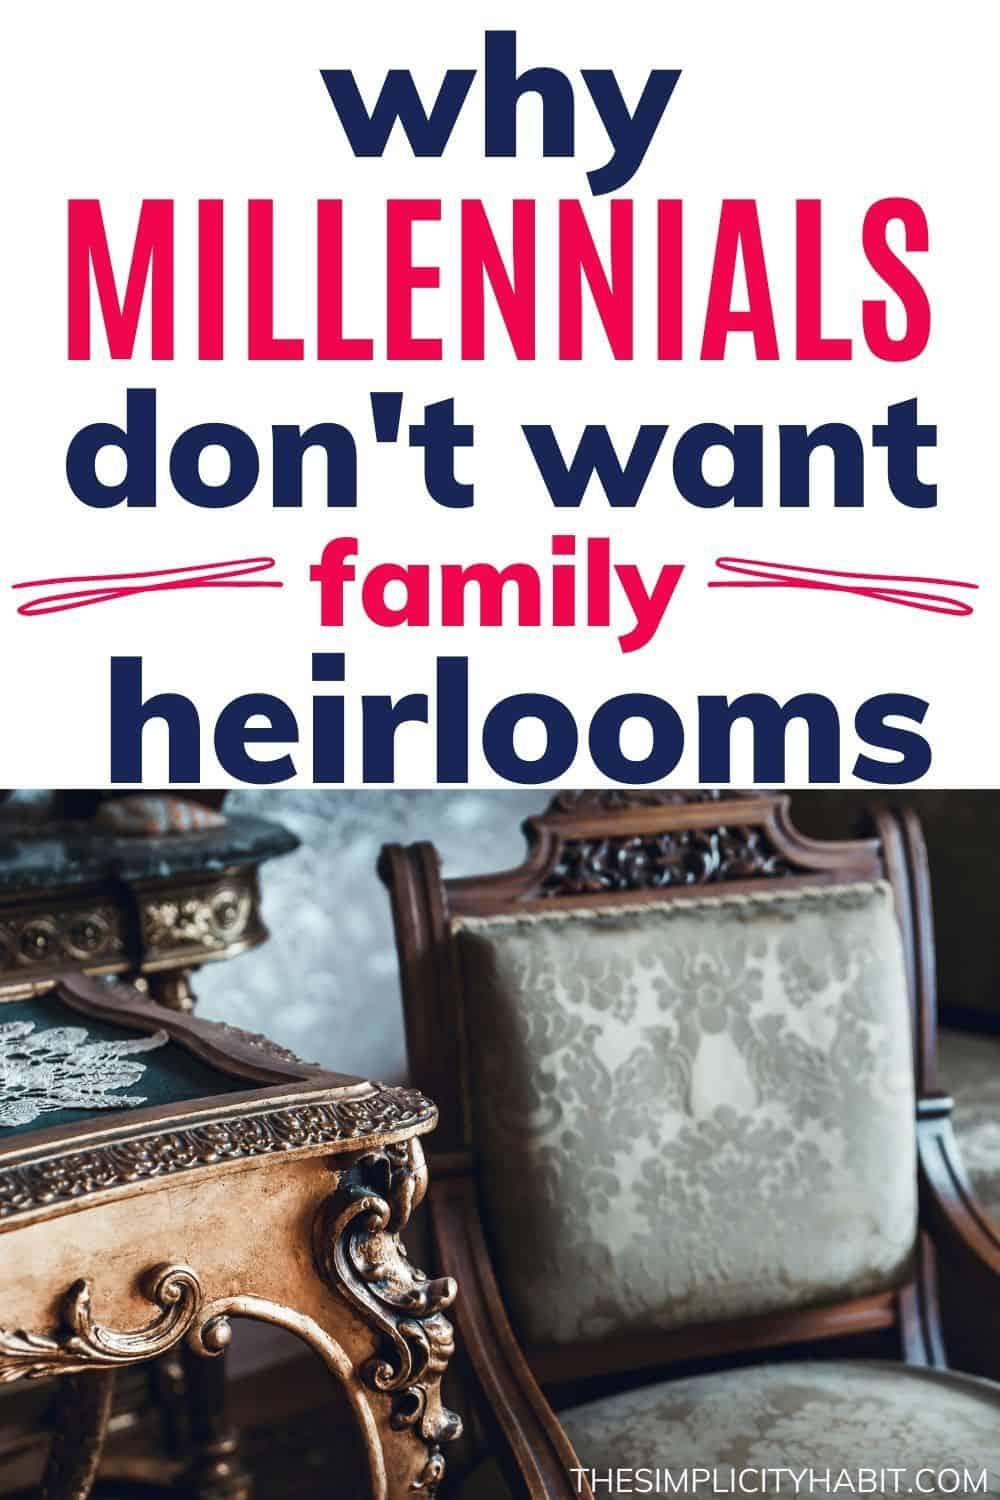 millennials don